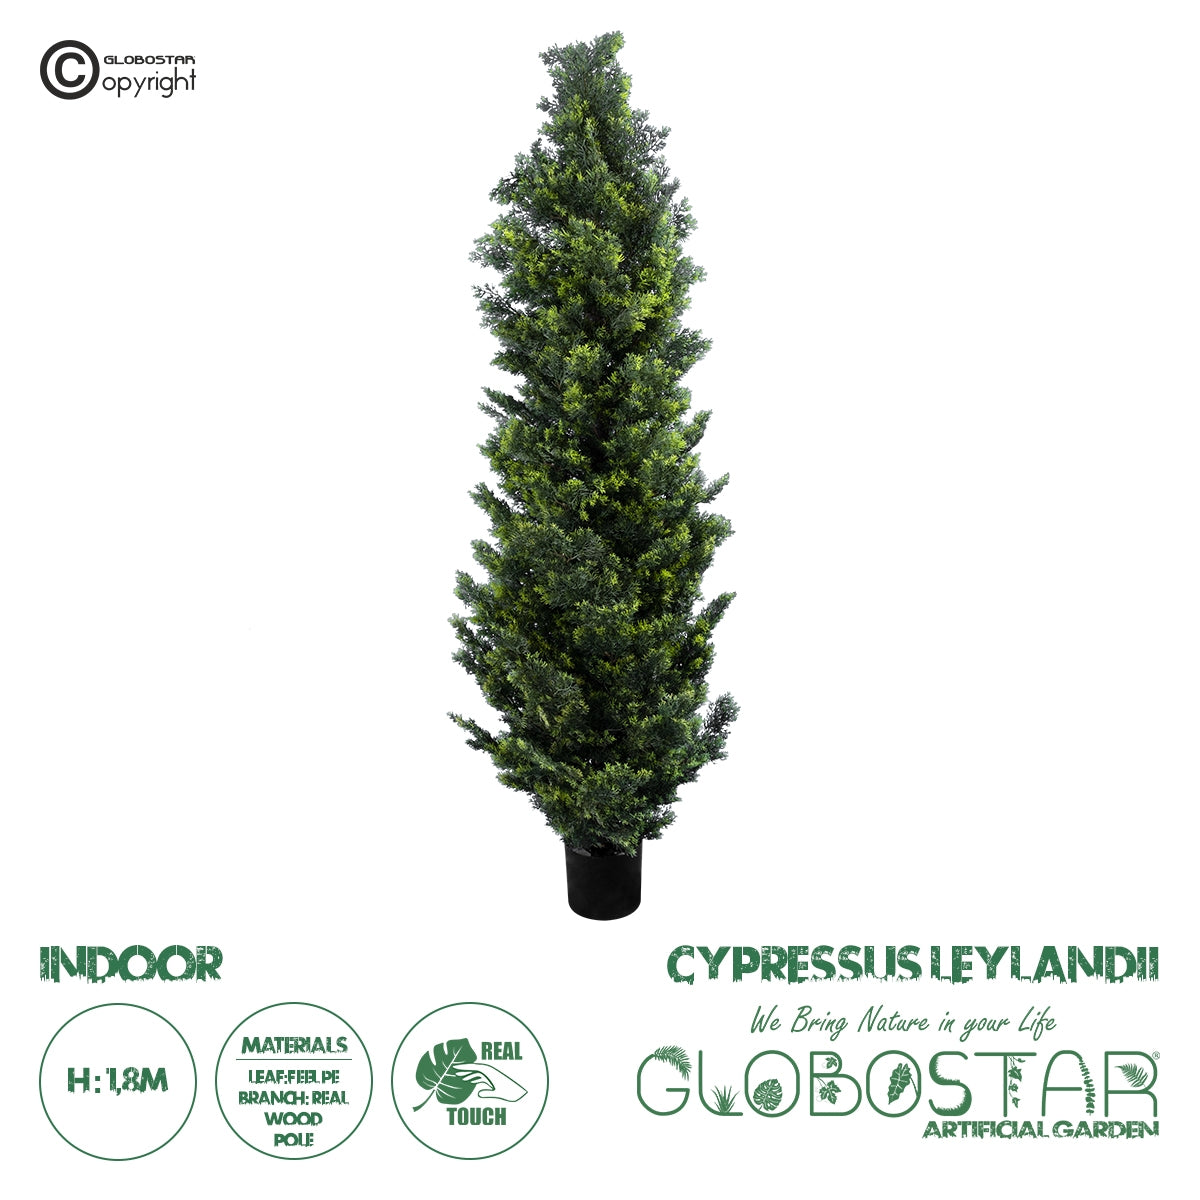 GloboStar® Artificial Garden CYPRESSUS LEYLANDII 20156 Τεχνητό Διακοσμητικό Φυτό Κυπαρίσσι Λέιλαντ Υ180cm